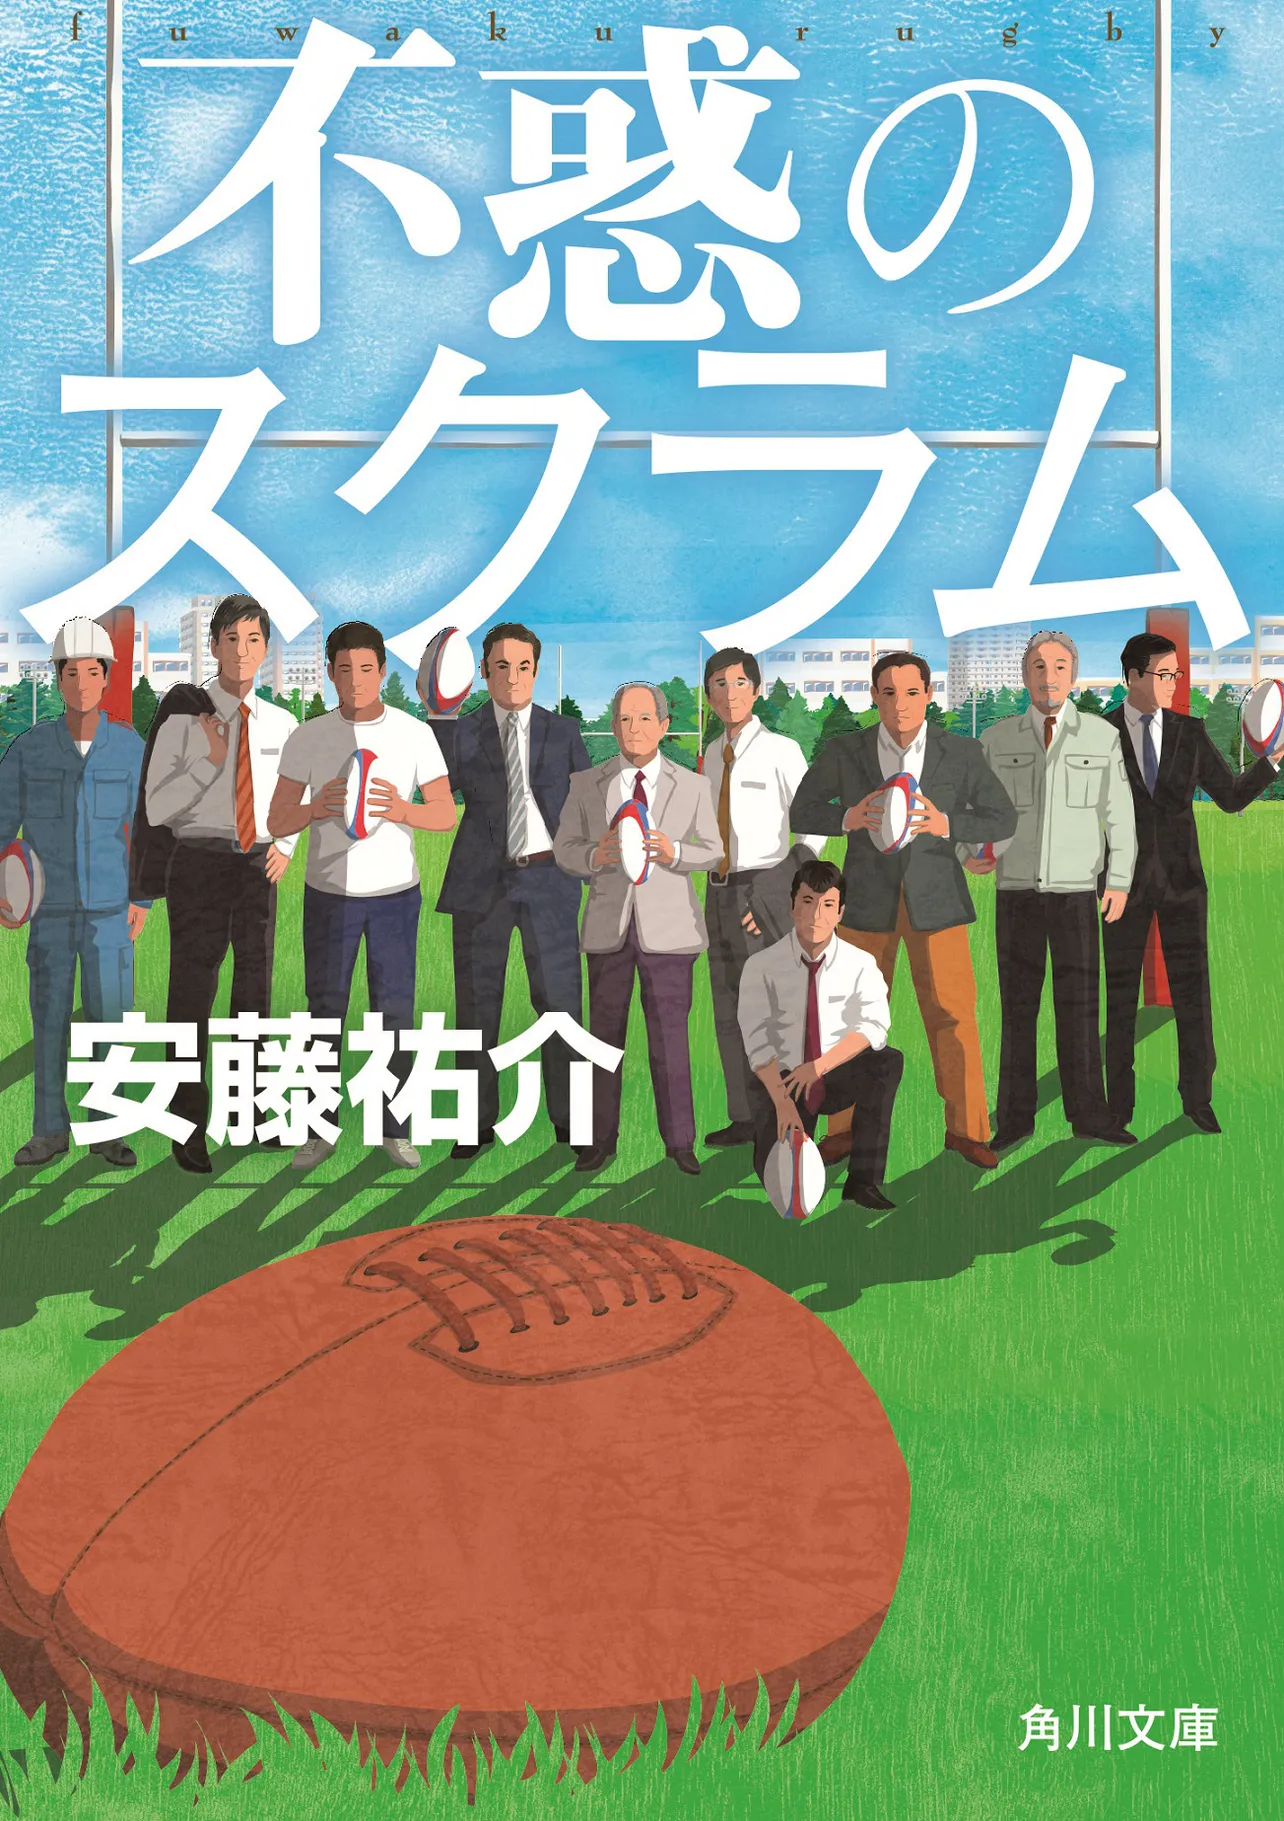 原作は、2016年にKADOKAWAから刊行された安藤祐介の同名小説。“号泣小説No.1”と話題に